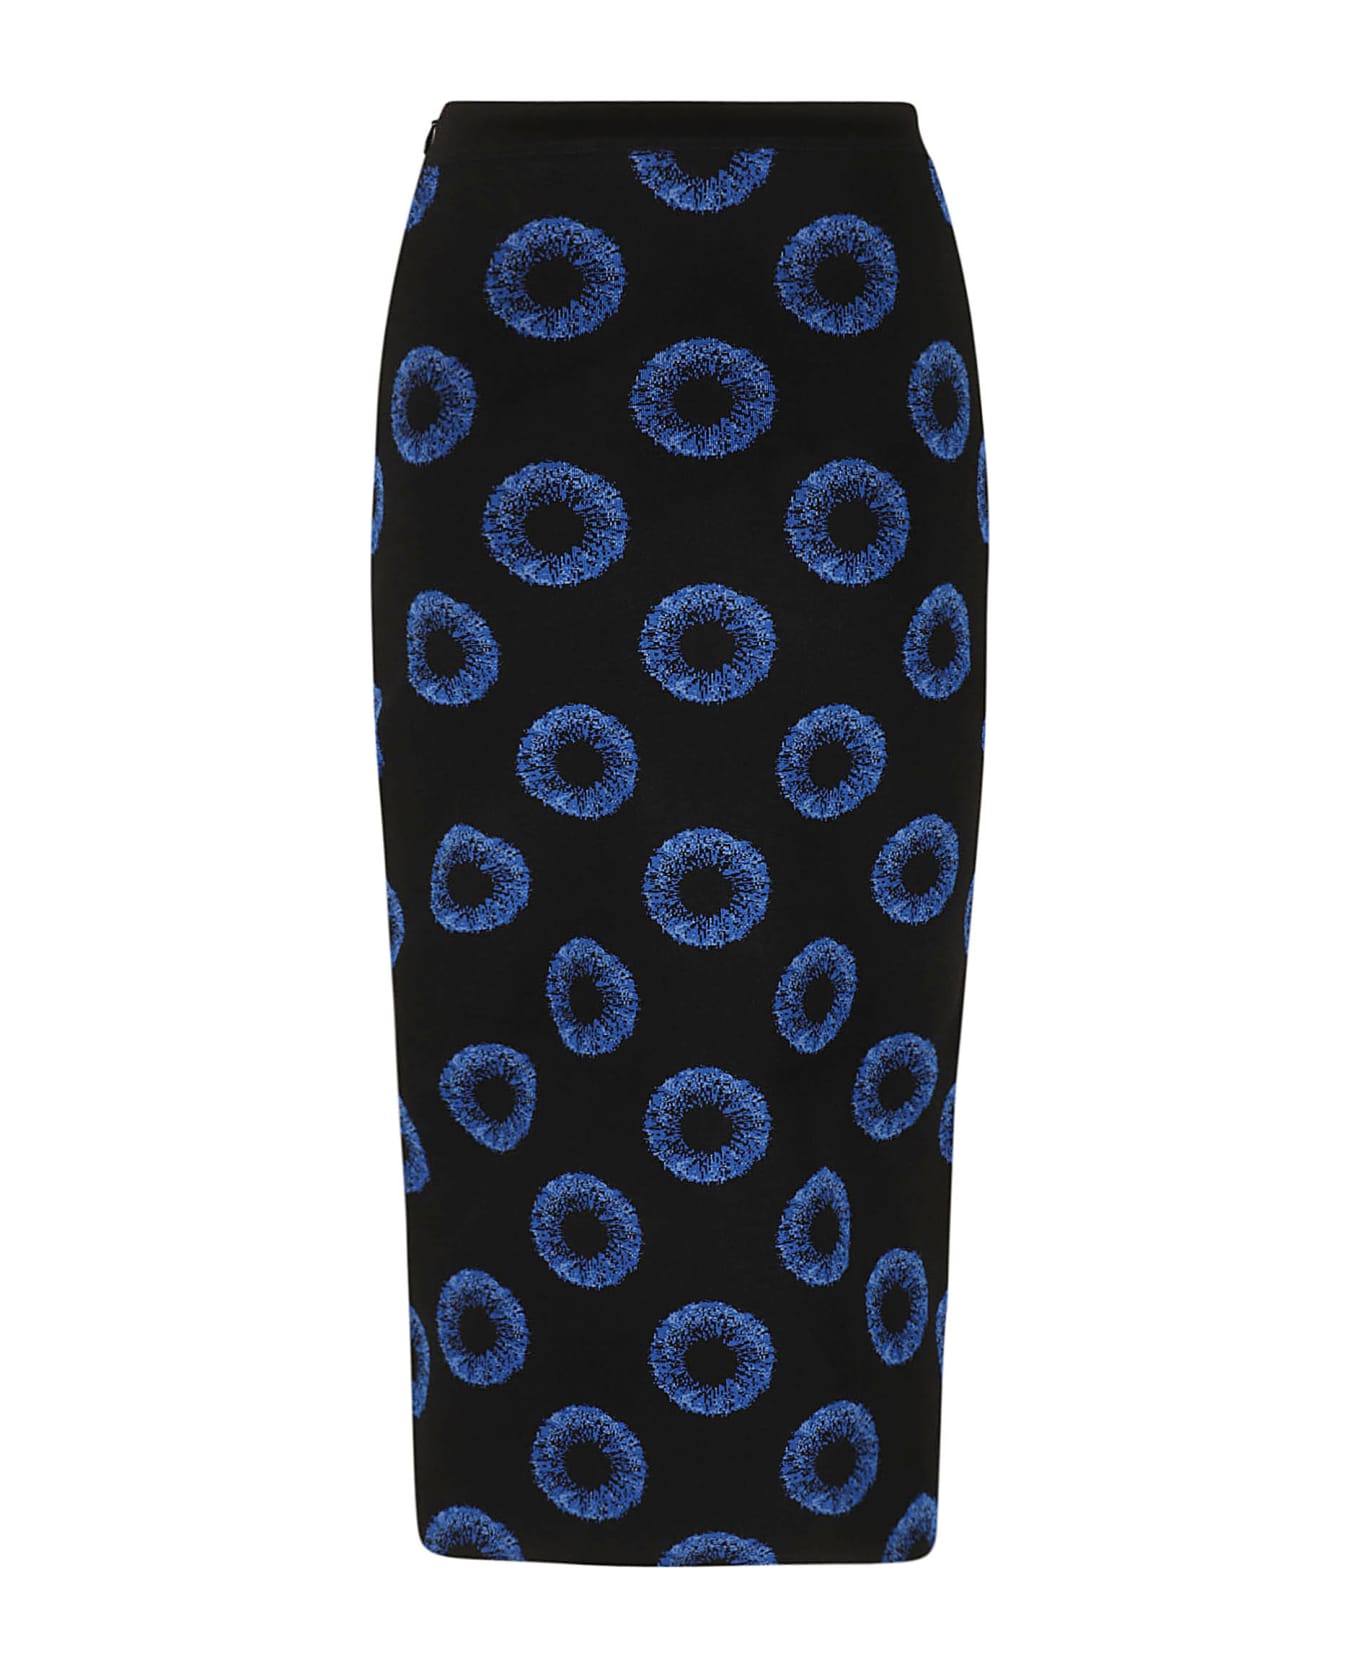 Alexander McQueen Iris Jacquard Knit Pencil Skirt - Black/Blue